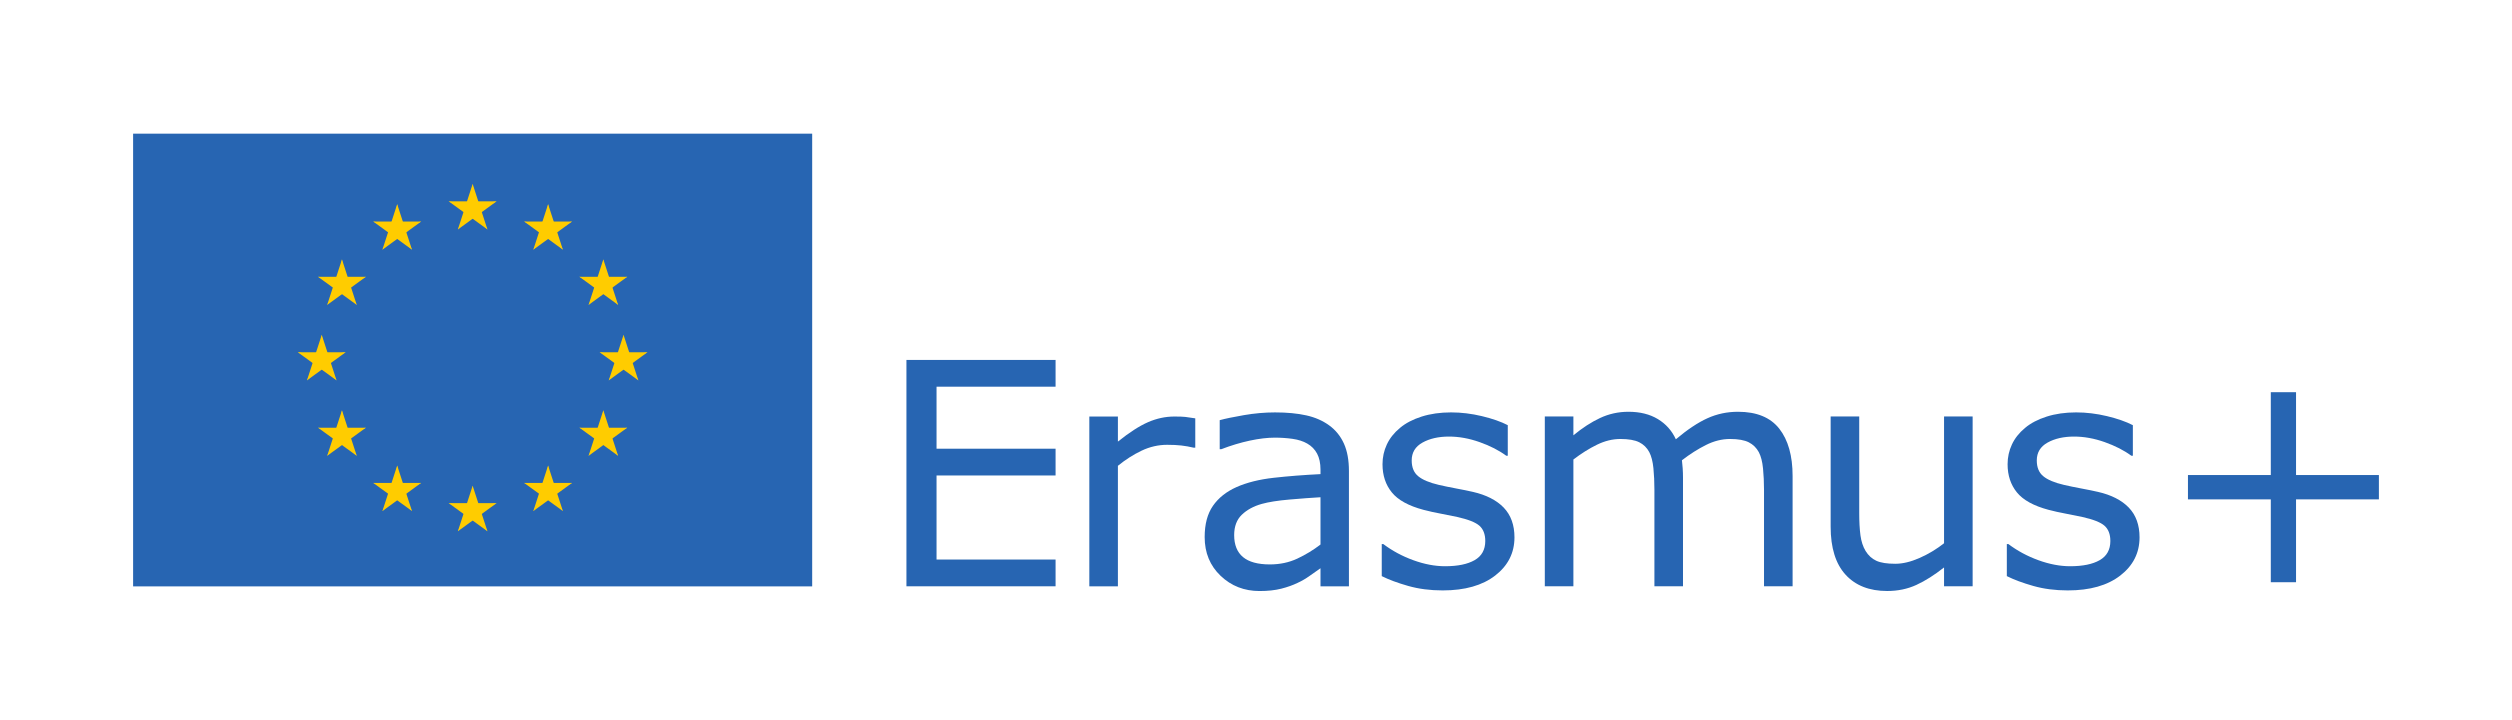 Erasmus - támogató logo